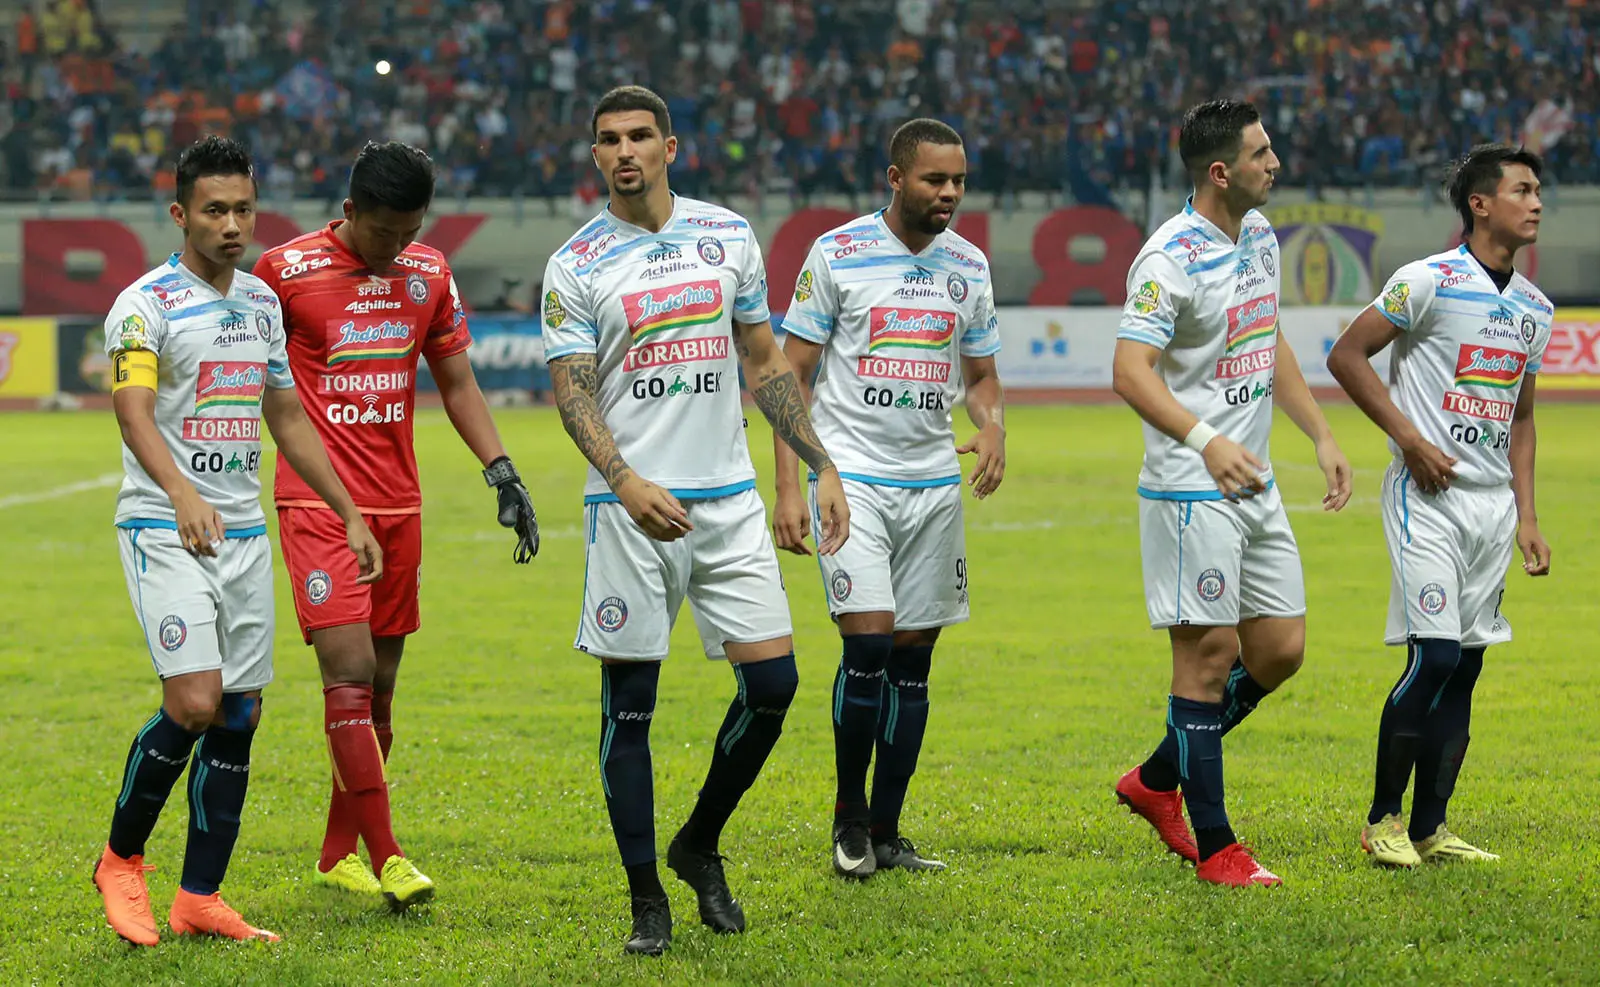 Pemain Arema lesu seusai dikalahkan PSIS Semarang lewat adu penalti, Jumat (23/2/2018) pada laga pertama PGK II. (Bola.com/Iwan Setiawan)